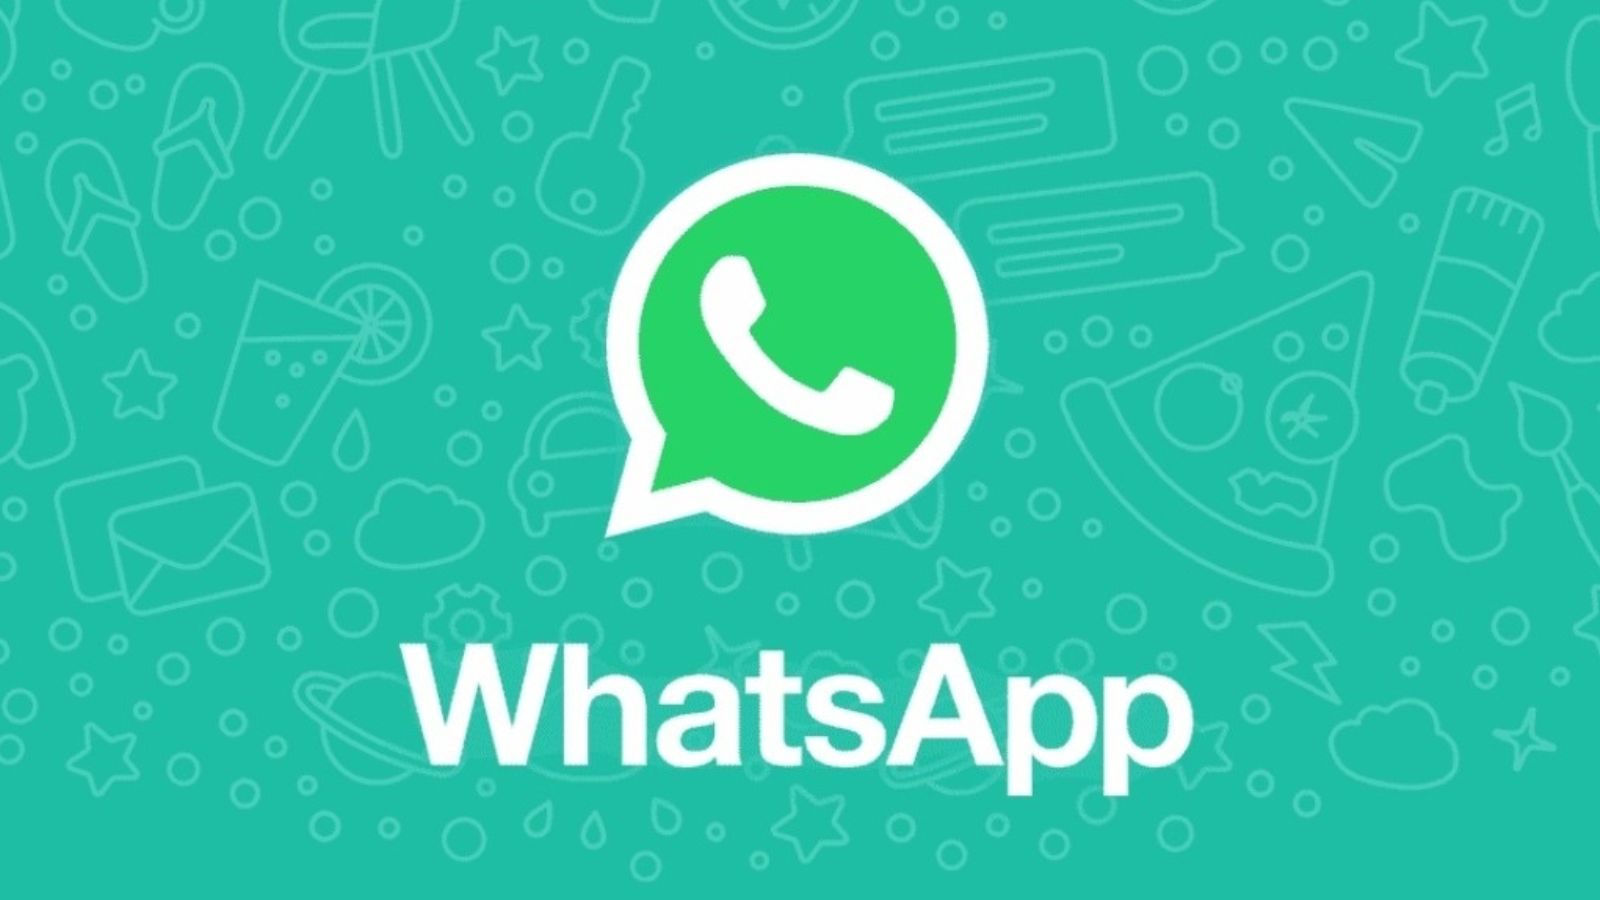 WhatsApp truffa chiamate numeri stranieri